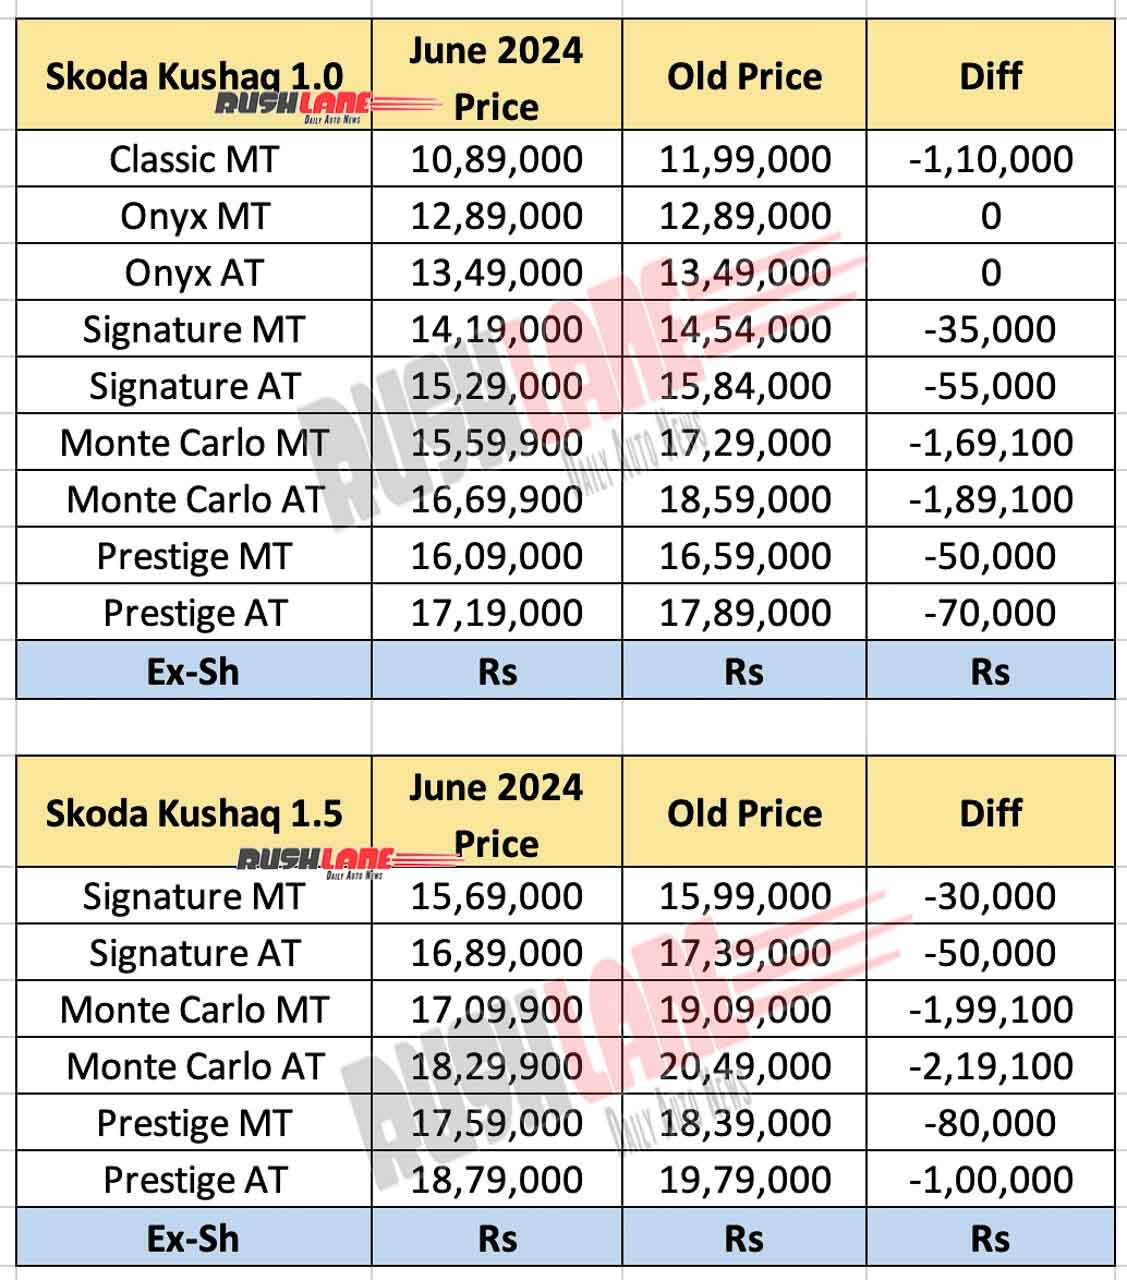 Skoda Kushaq Price Update - June 2024